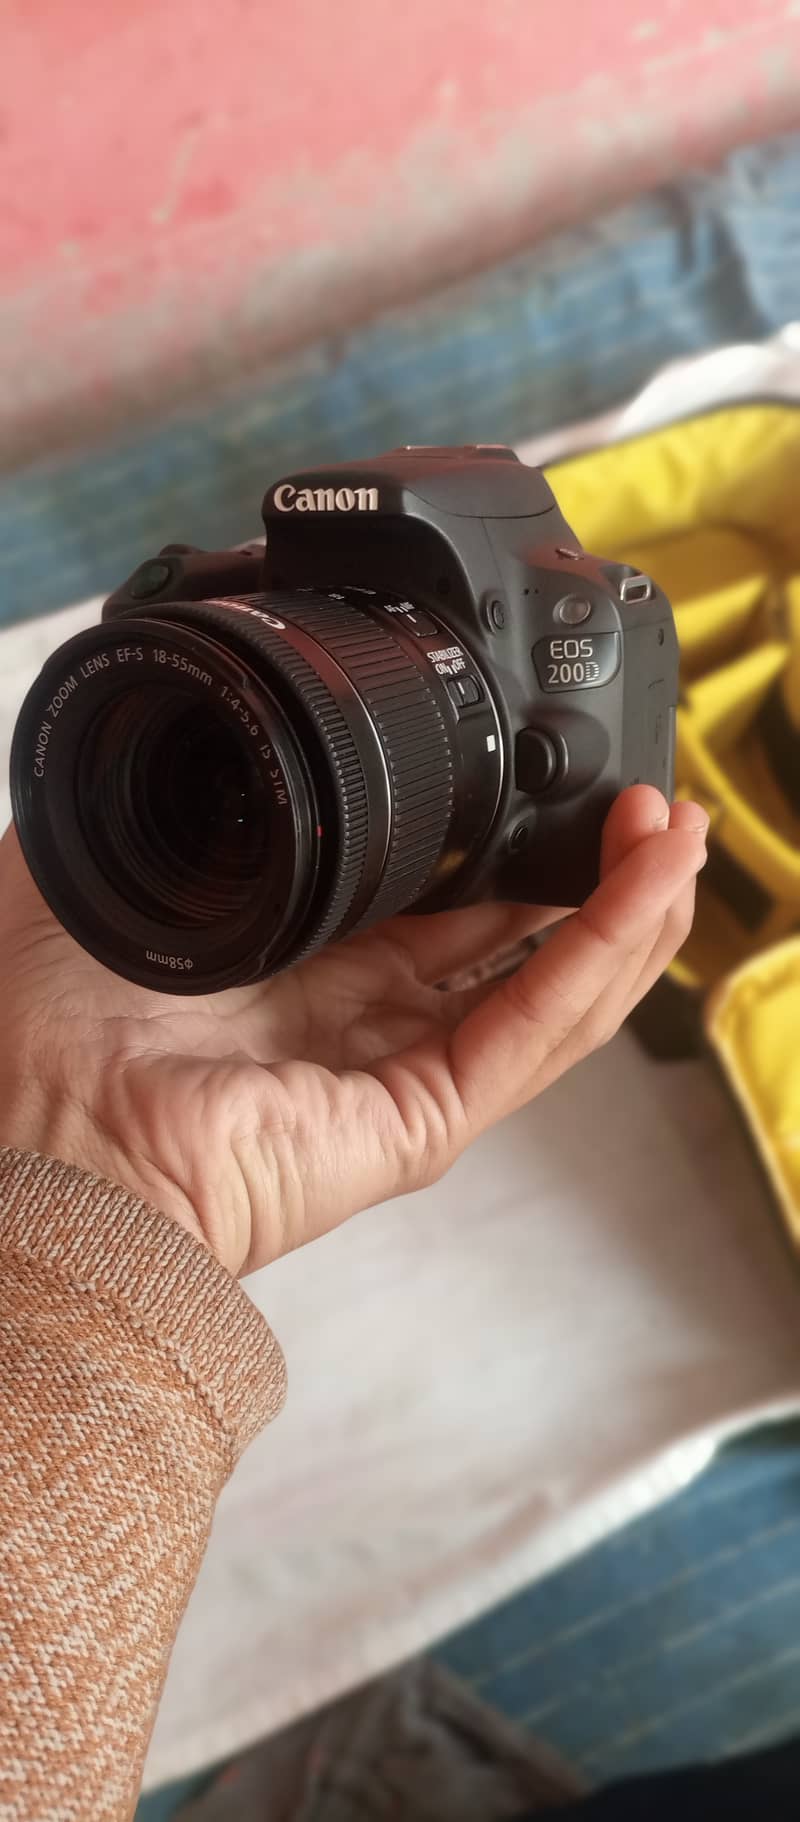 Canon 200d DSLR with 18-55 STM lens 4